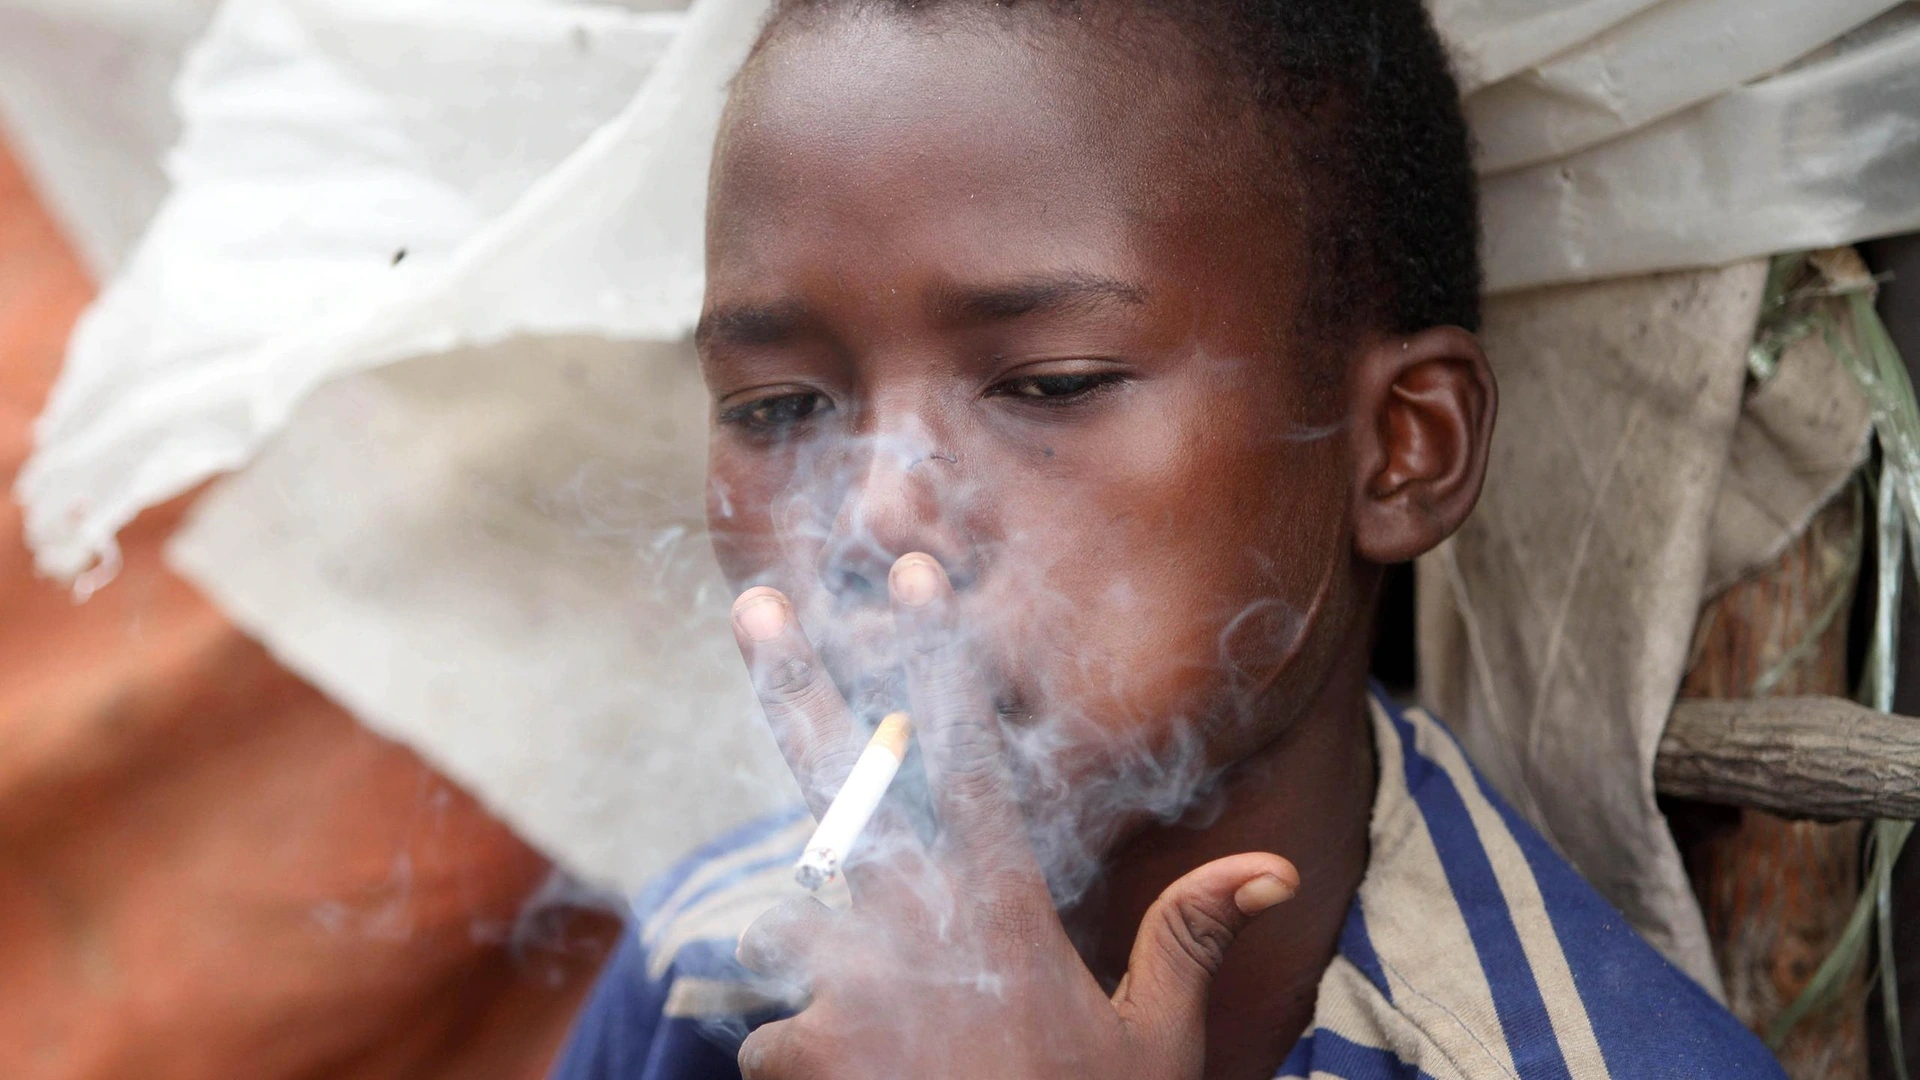 OMS: près de 38 millions d'enfants âgés de 13 à 15 ans consomment du tabac